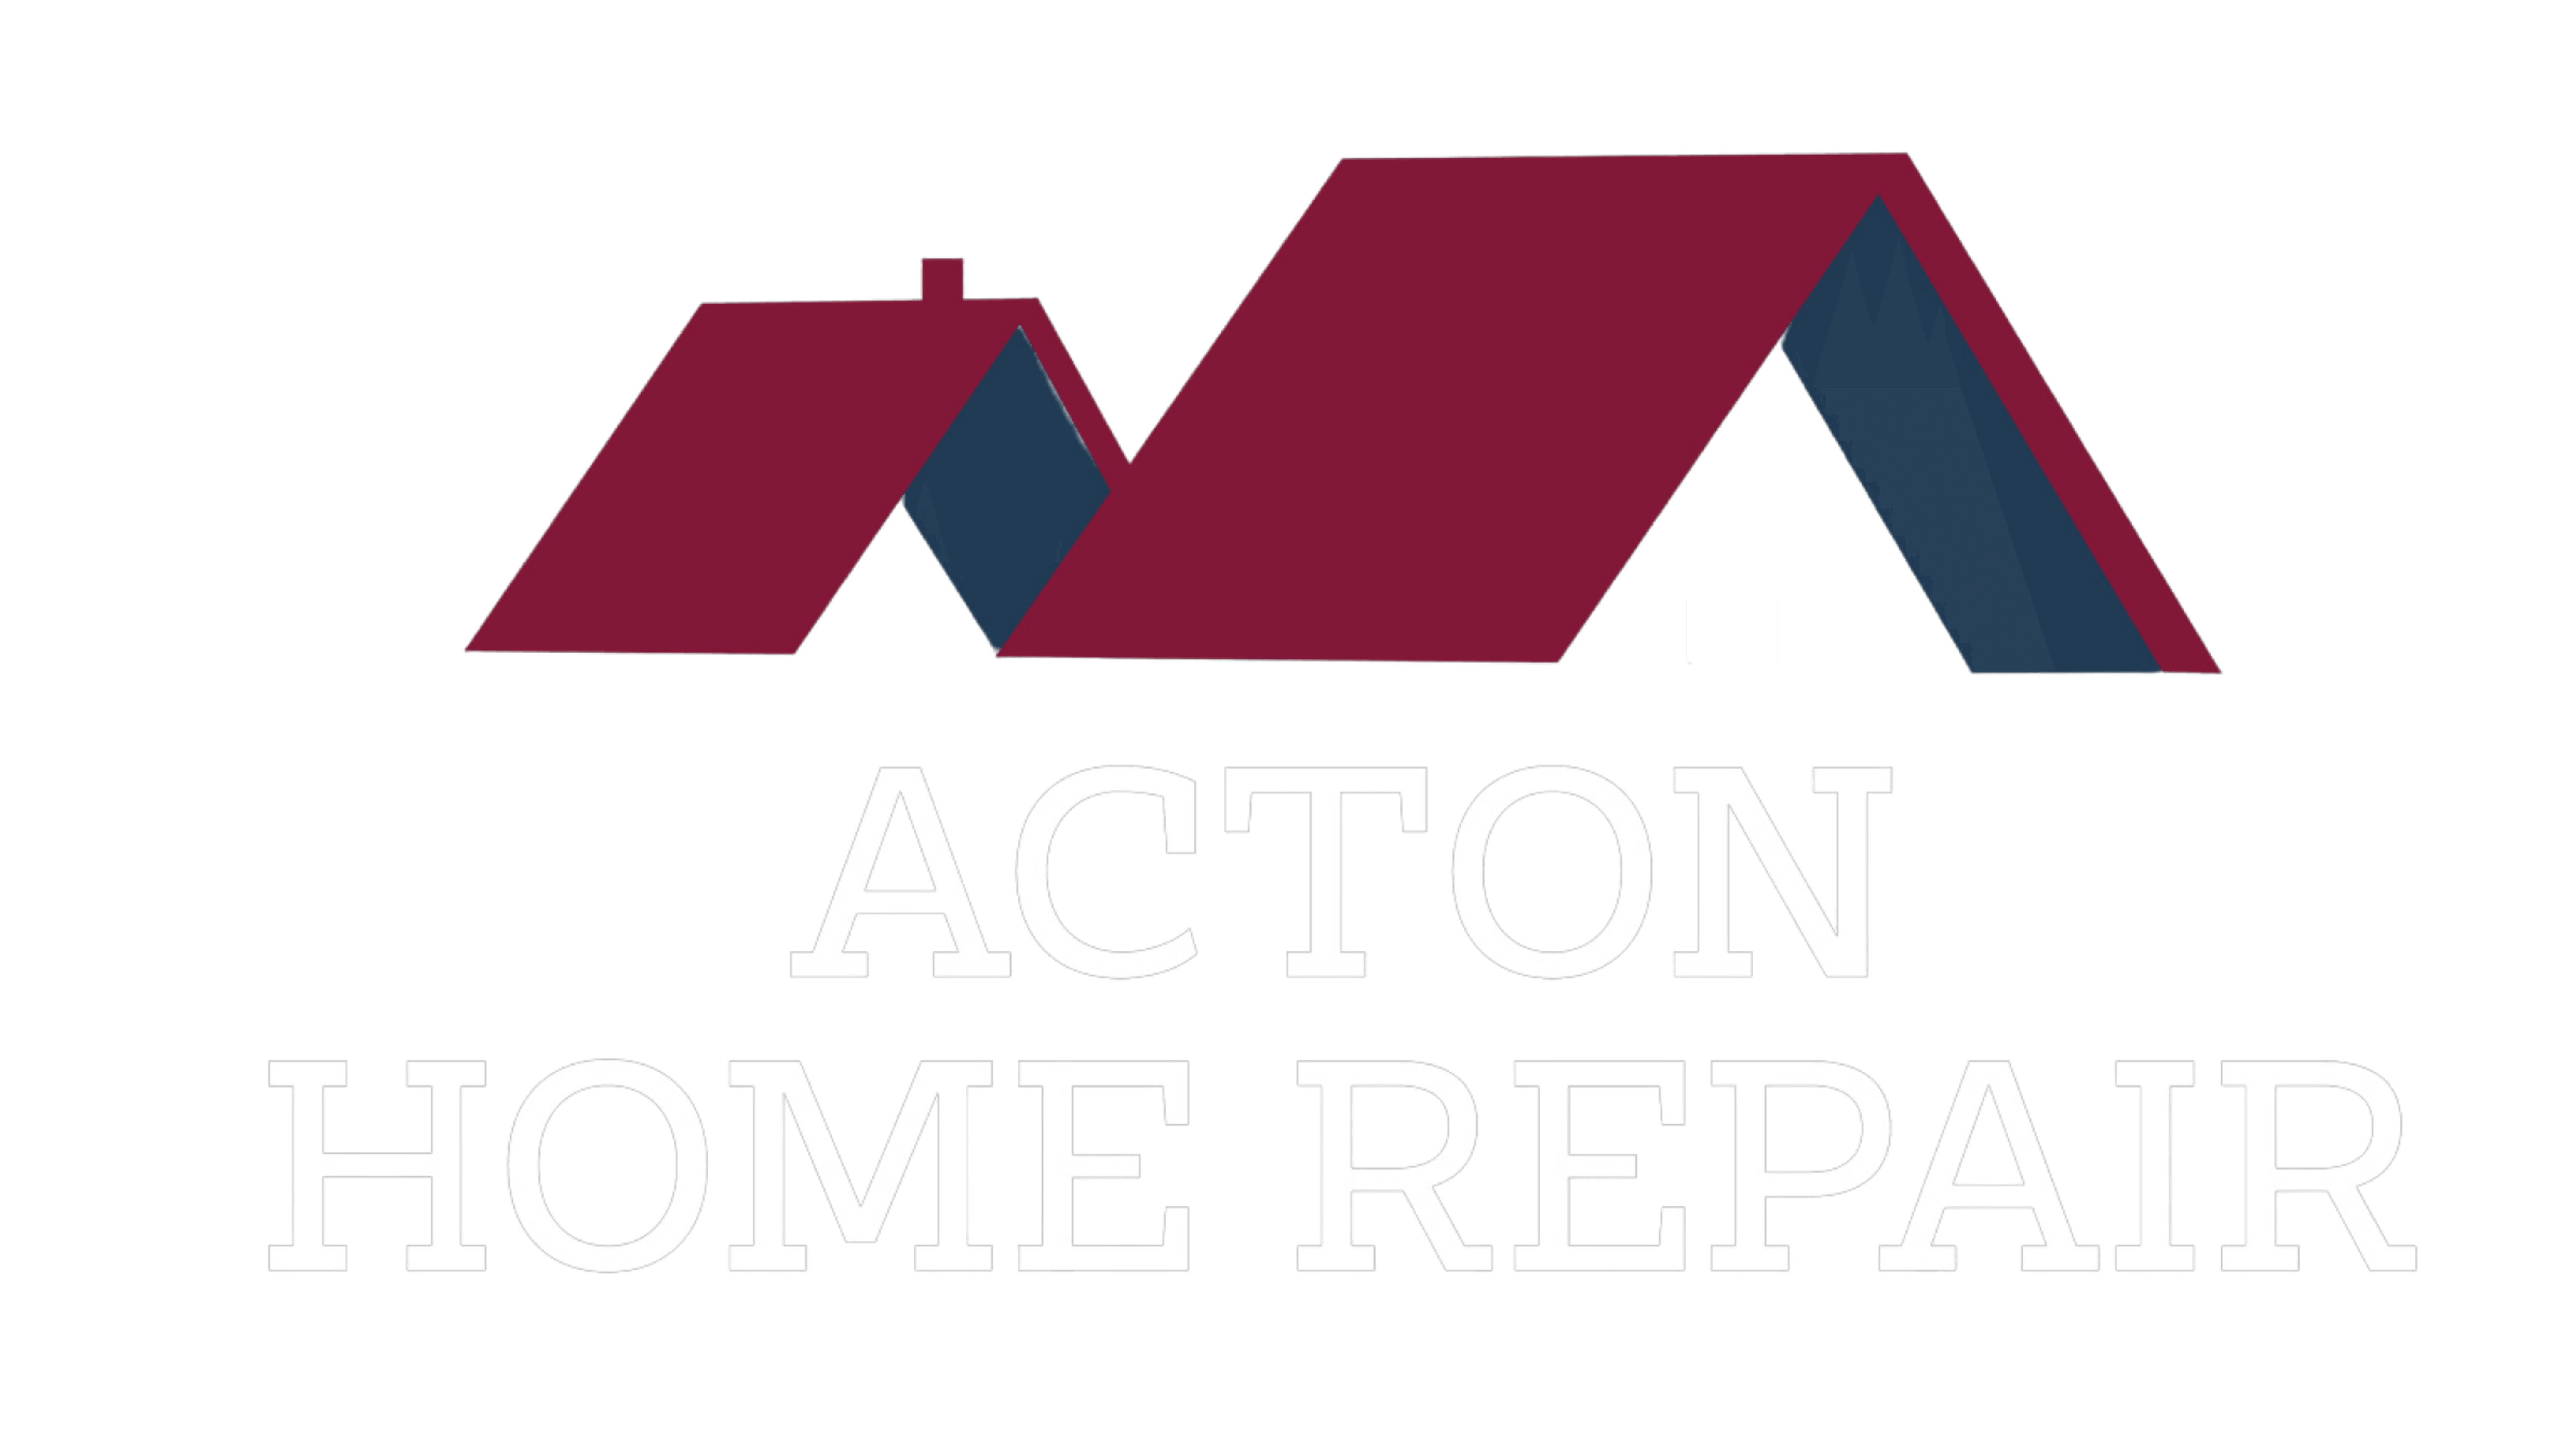 Acton home repair